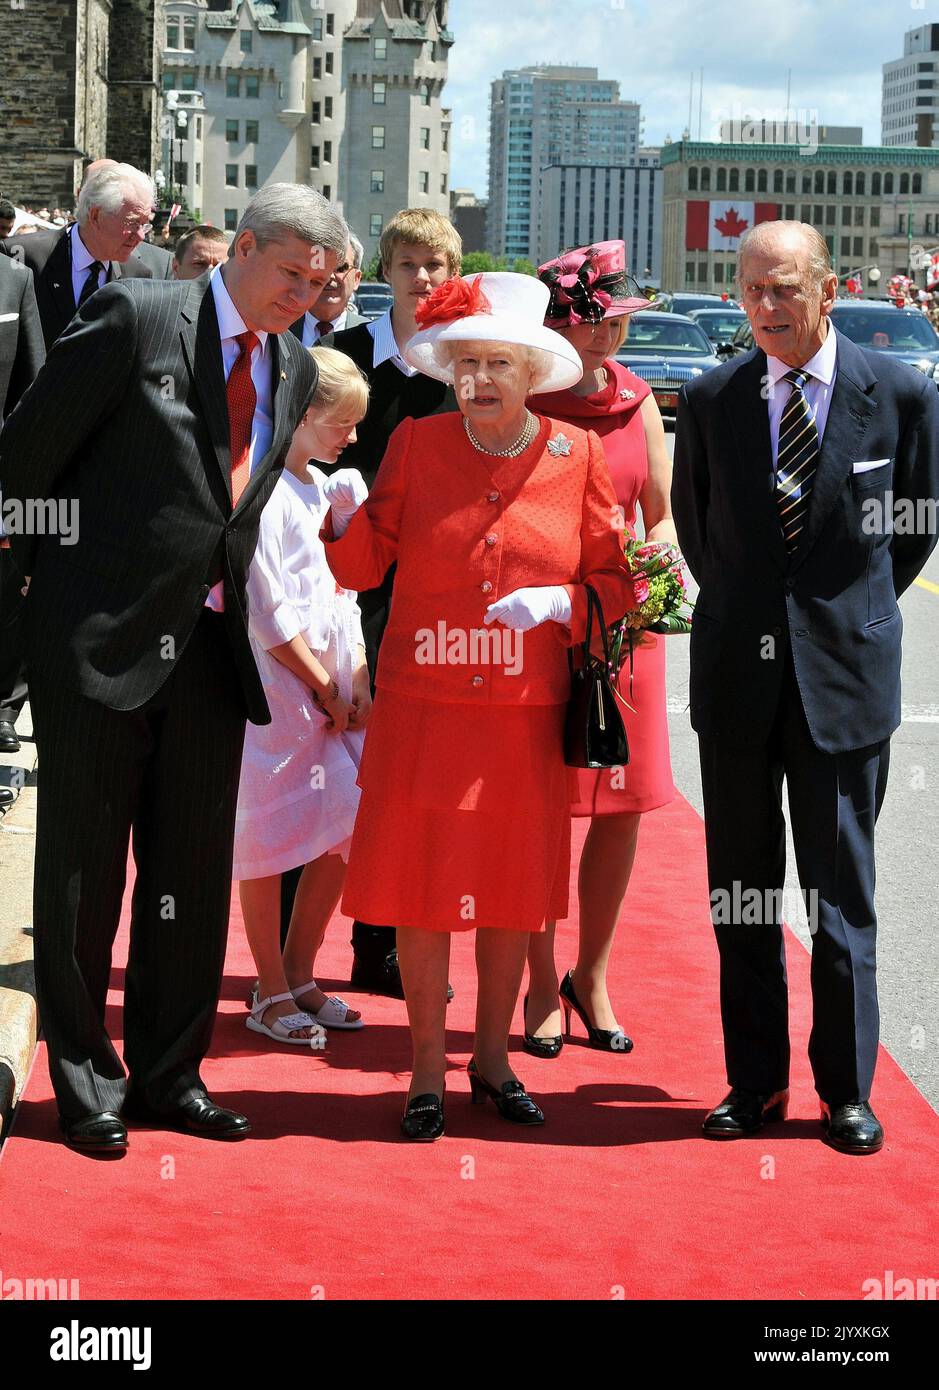 Foto del expediente fechada el 1/7/2010 de la Reina Isabel II, en los colores rojo y blanco de la bandera canadiense, con Stephen Harper, primer ministro de Canadá (izquierda), y el duque de Edimburgo, después de llegar para asistir a las celebraciones del Día de Canadá, en Ottawa. Elizabeth II era famosa por su amor por los colores de bloque y los sombreros que hacían juego, y su moda se convirtió en una parte legendaria de su papel como monarca. La Reina fue descrita una vez como 'aliño de potencia in extremis' por utilizar tonos vibrantes para que se destacara de la multitud mientras que sus sombreros le permitían ser vistos fácilmente, pero eran lo suficientemente pequeños, por lo que su cara era visible Foto de stock